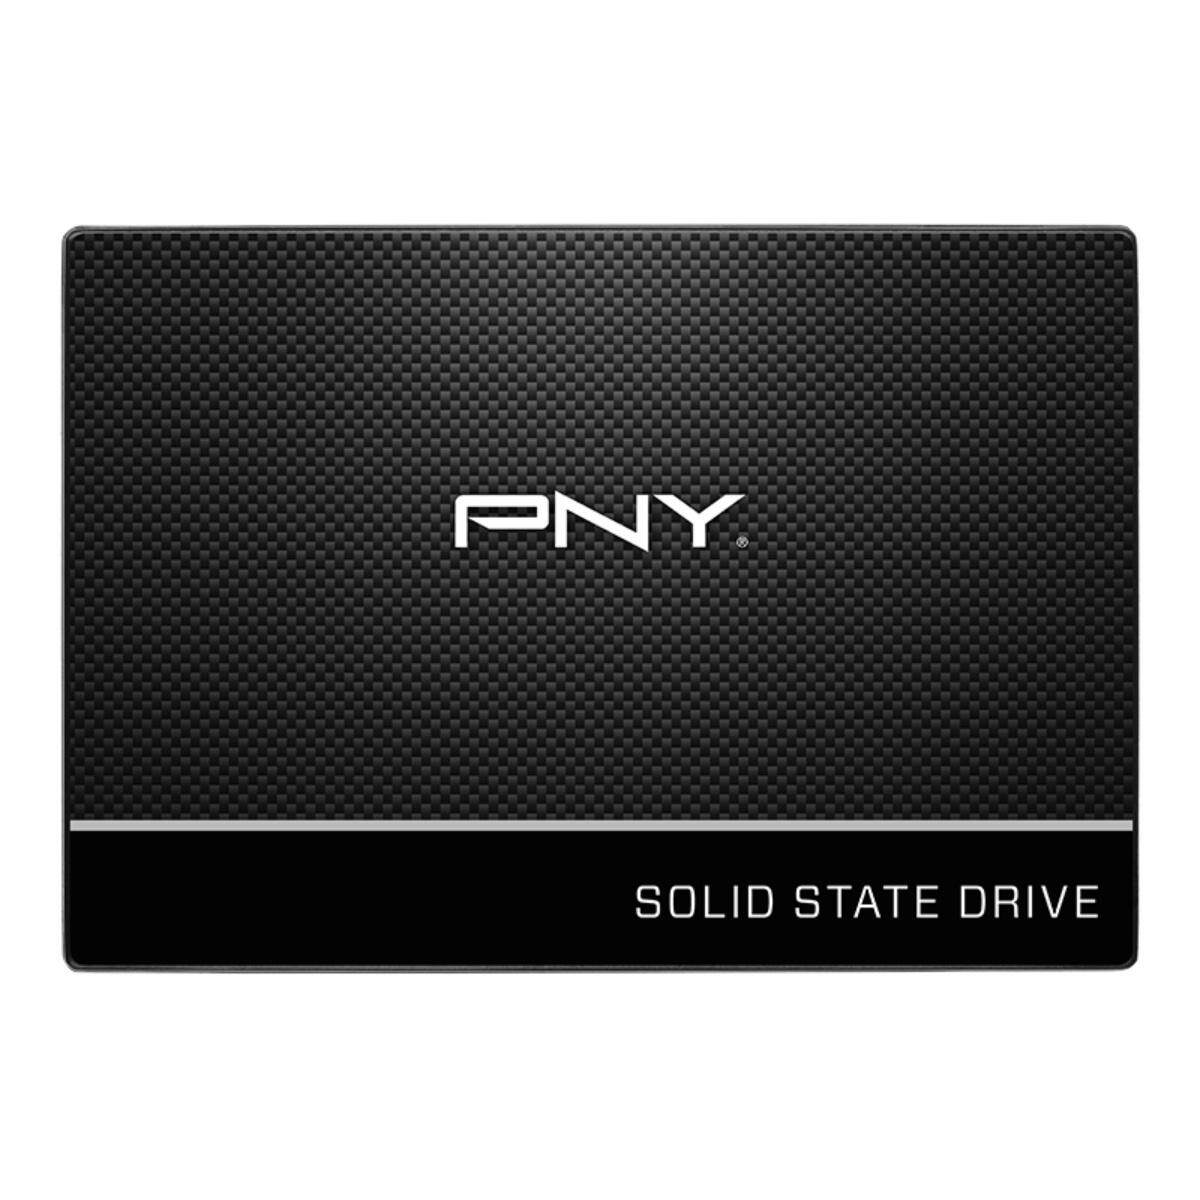 SSD PNY CS900 2.5" SATA 3 3D NAND SSD Solid State Drives 240GB (SSD7CS900-240-RB)